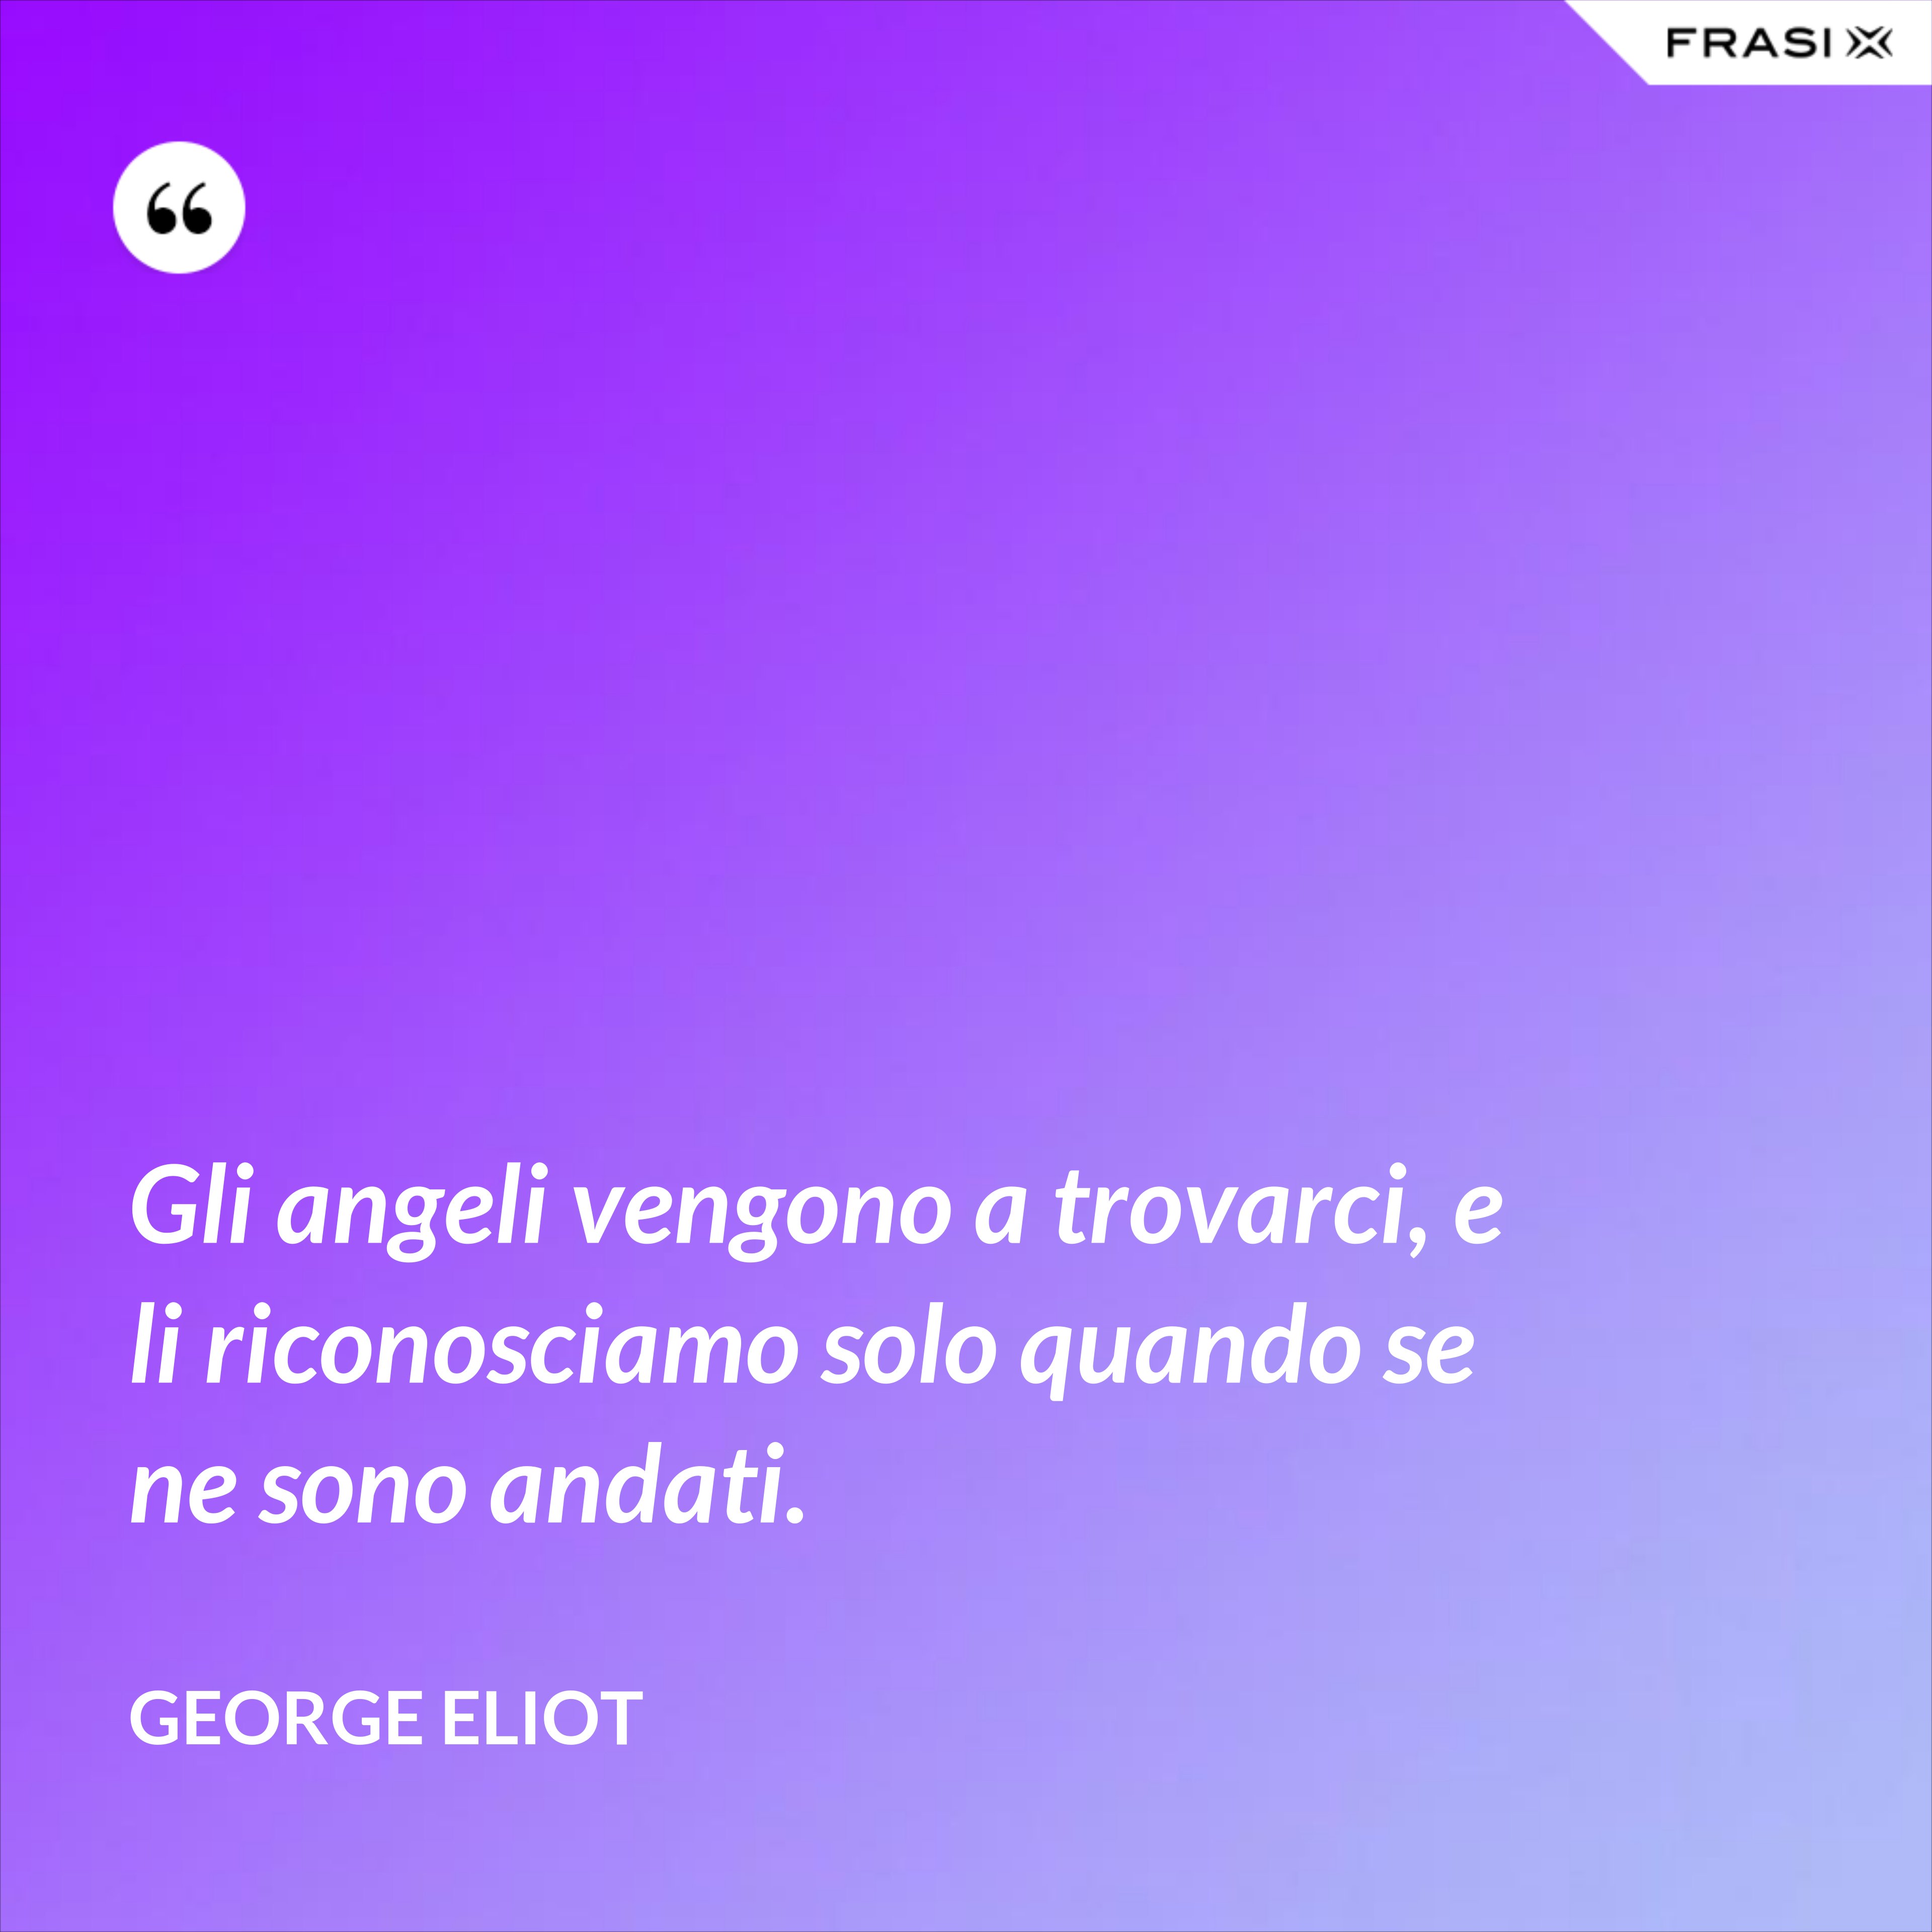 Gli angeli vengono a trovarci, e li riconosciamo solo quando se ne sono andati. - George Eliot